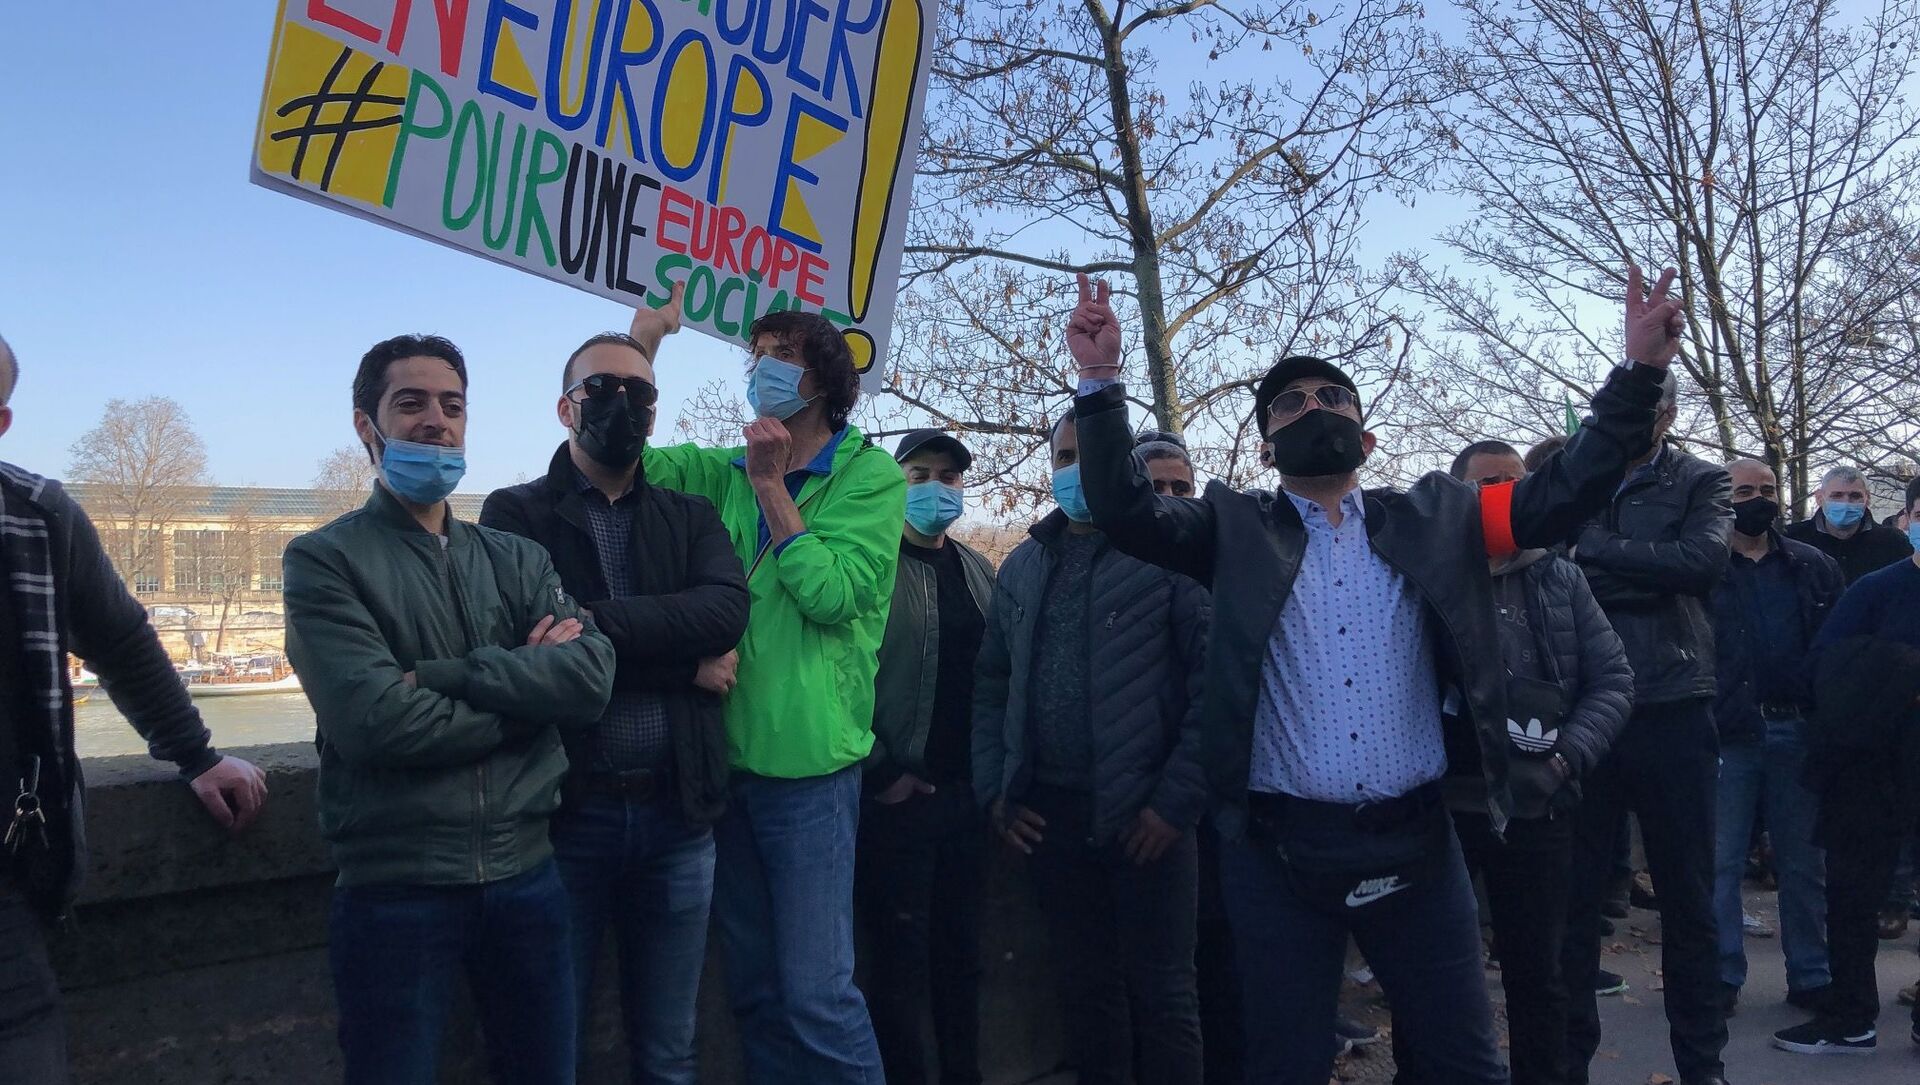 Manifestation des chauffeurs VTC contre la loi Uber, le 24 février 2021 à Paris - Sputnik Afrique, 1920, 24.02.2021